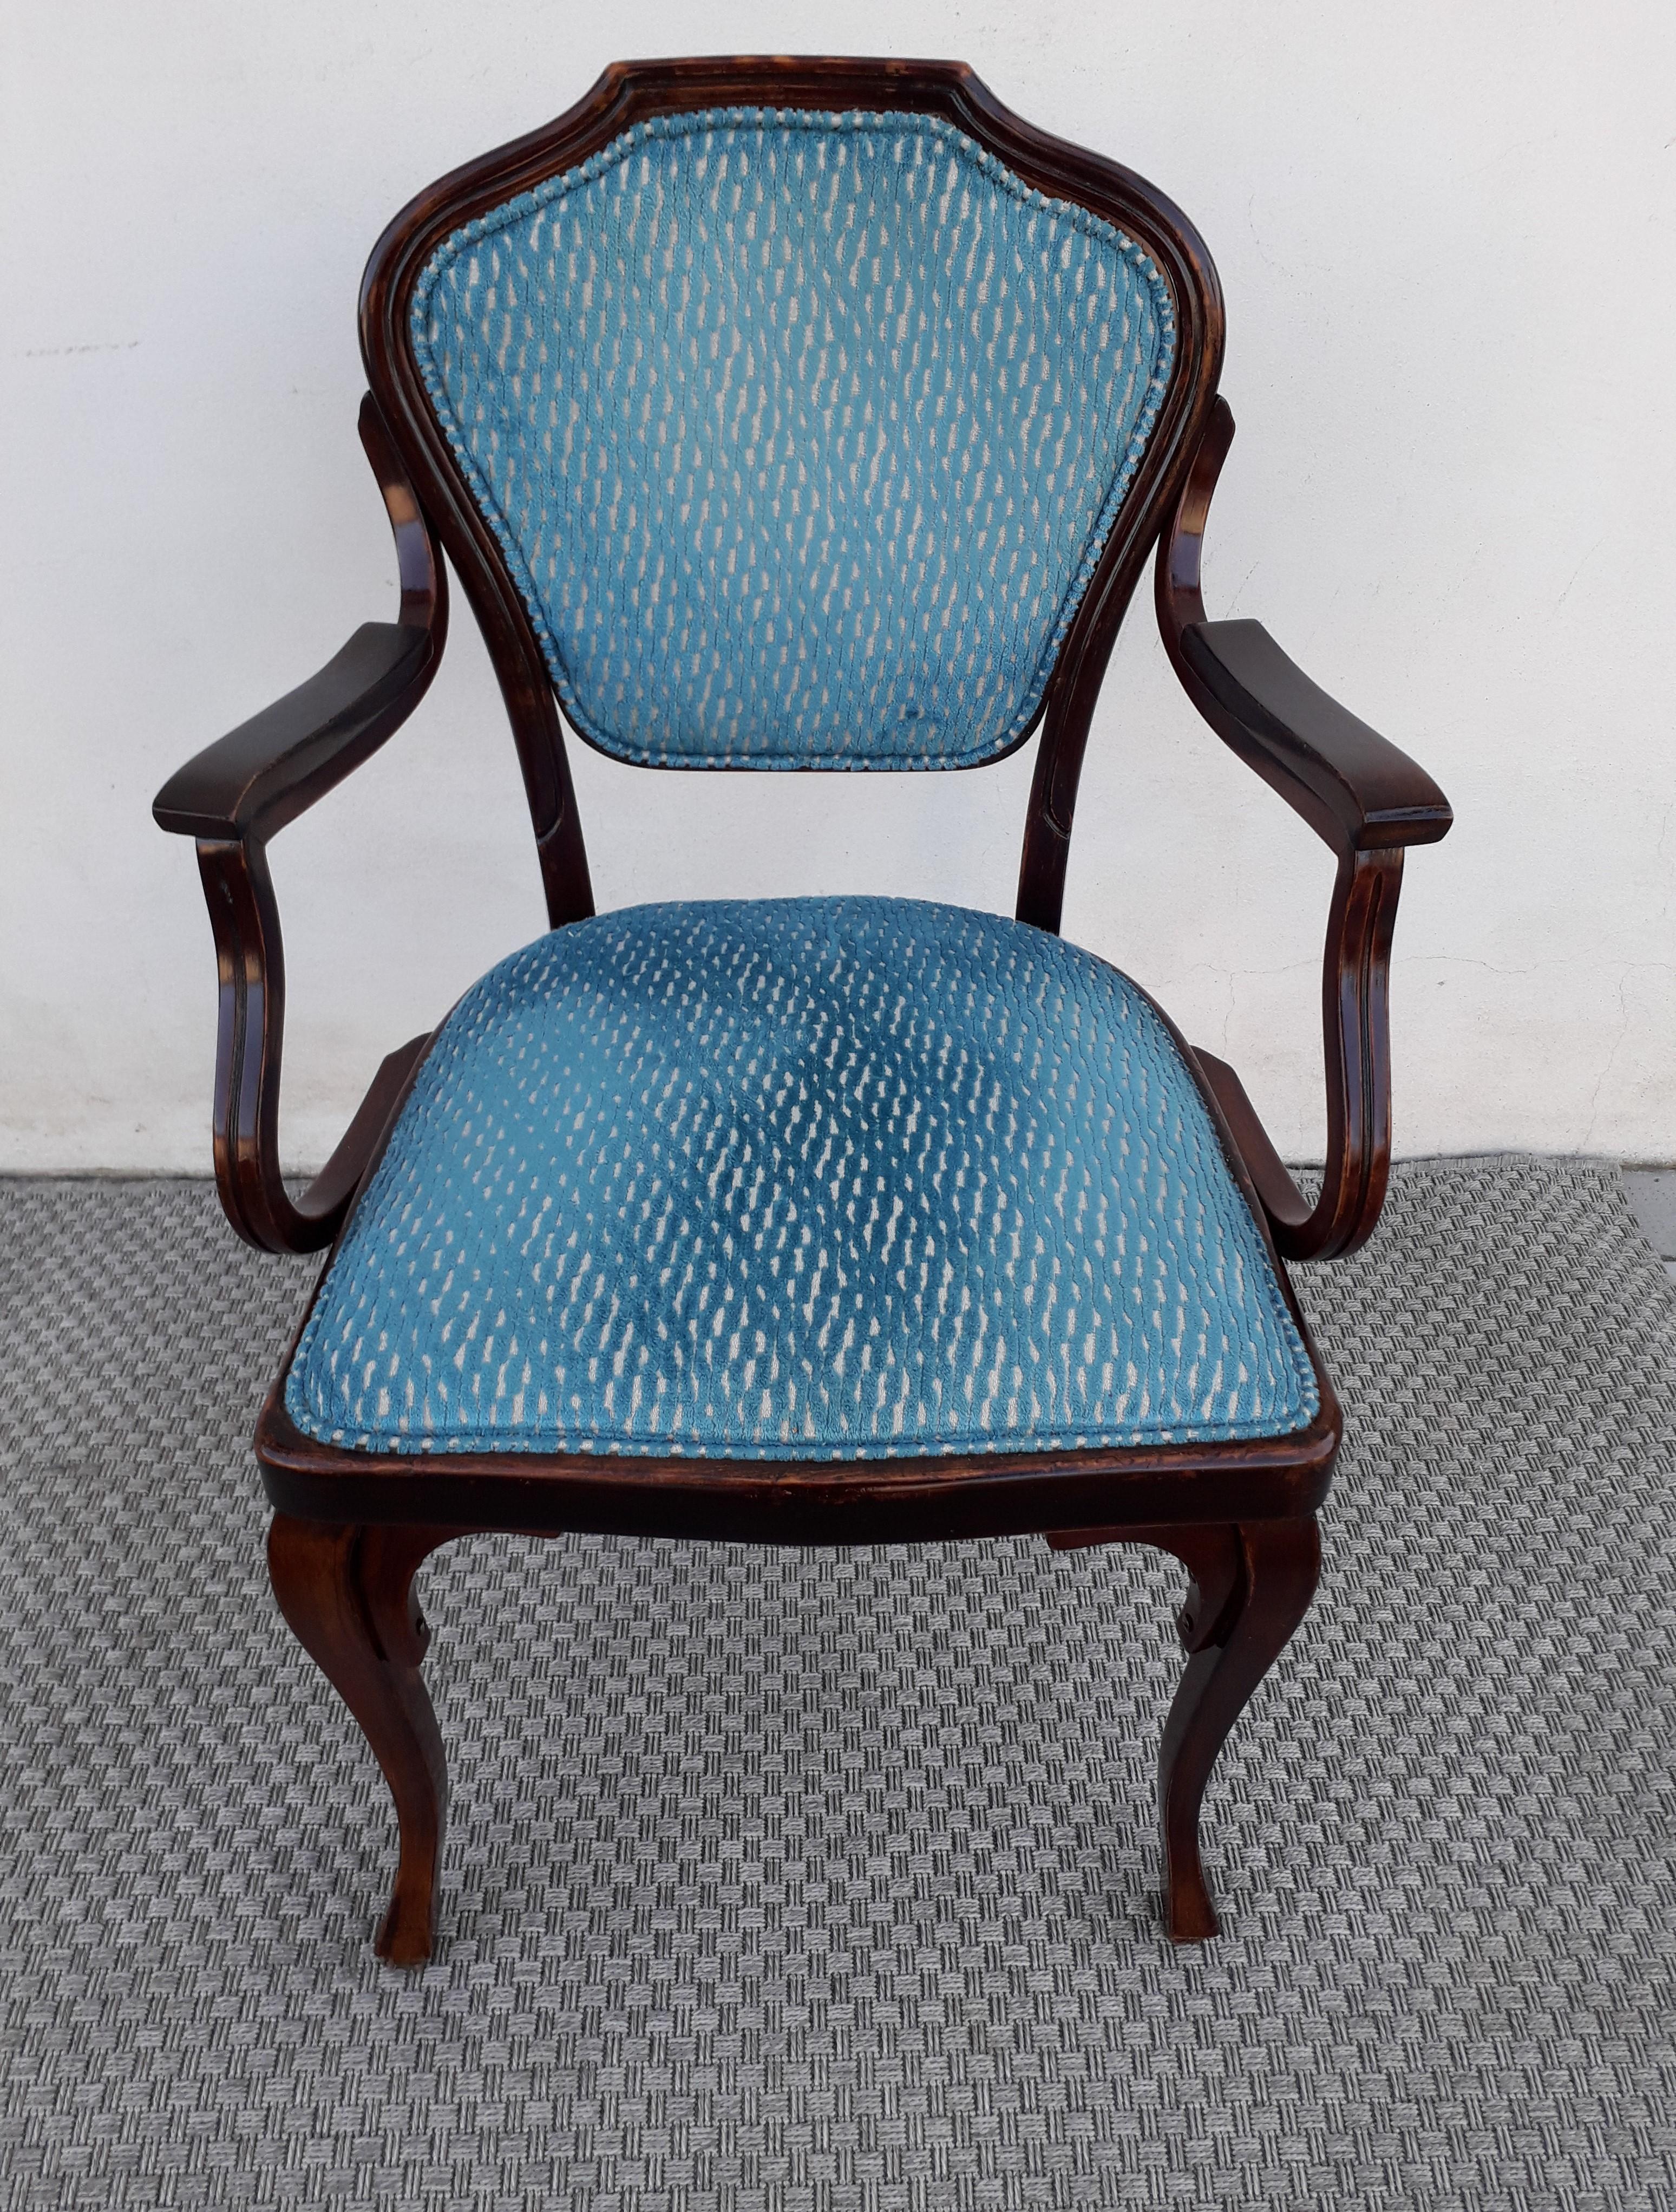 Modell Sessel N° 303, entworfen von dem Wiener Architekten Gustav Siegel und hergestellt von Jacop & Josef Kohn in der ersten Patina.
Samtiger Stoff und Pad in gutem Zustand.
Stabiler und superleichter Sessel, der zudem ein seltenes Modell ist.